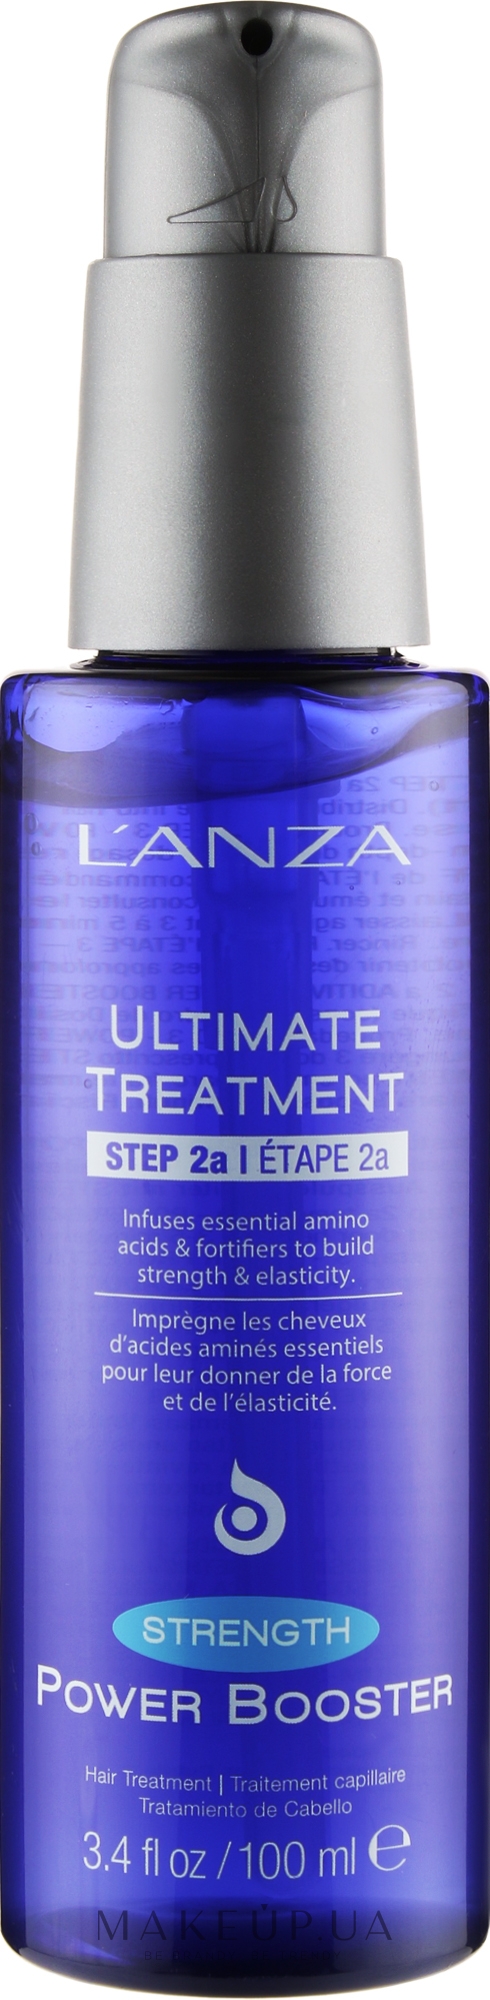 Активний бустер для волосся - L'Anza Ultimate Treatment Power Boost Strength — фото 100ml